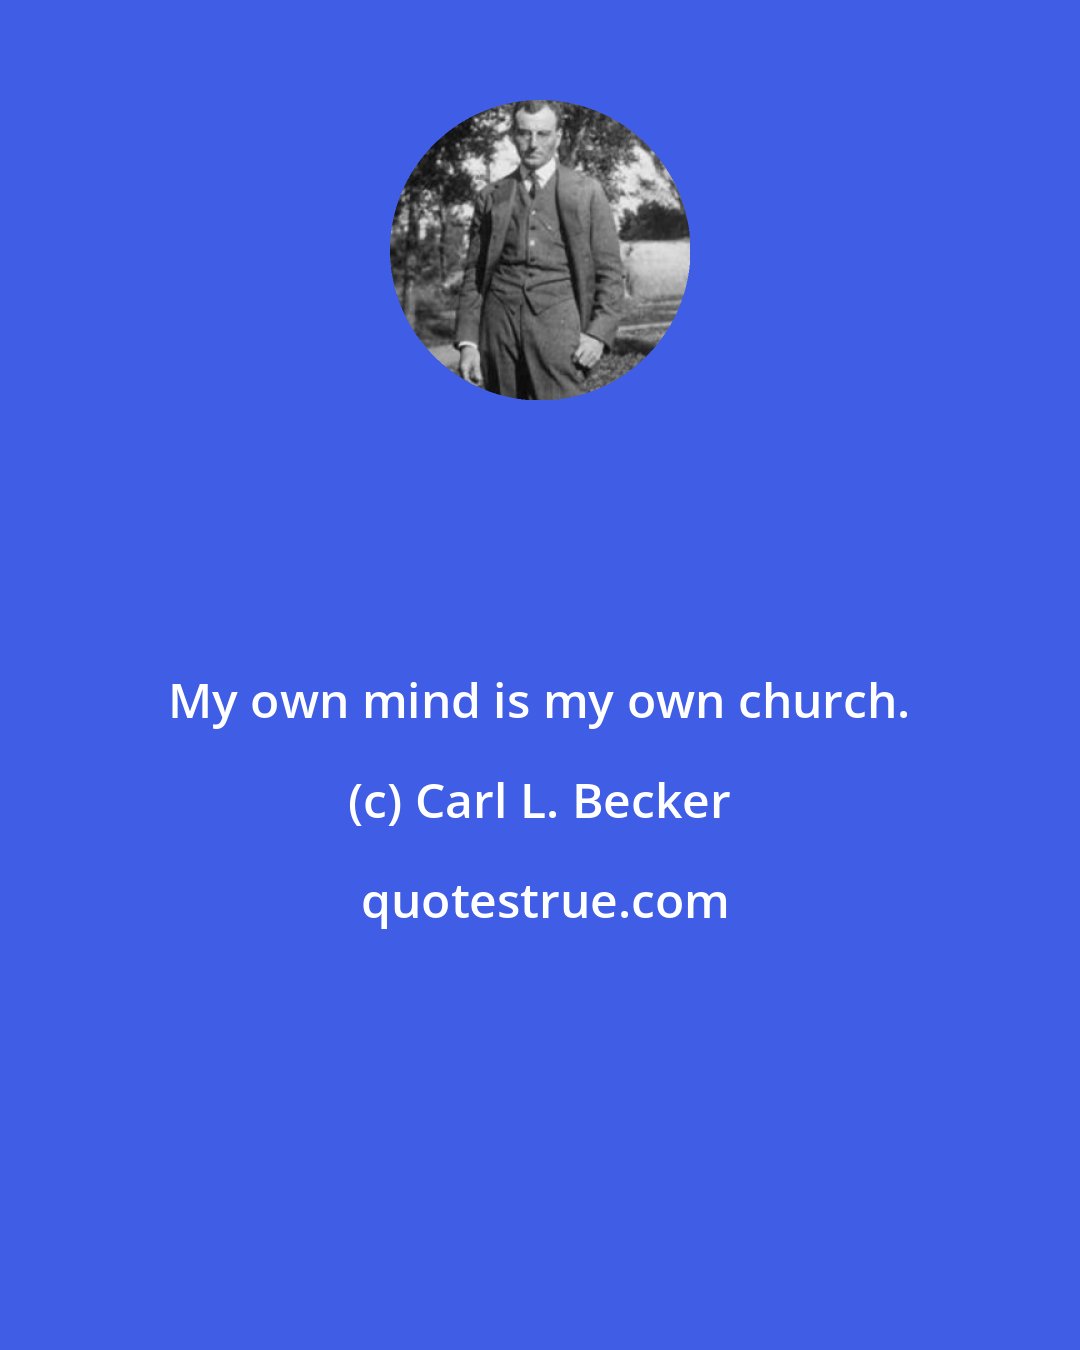 Carl L. Becker: My own mind is my own church.